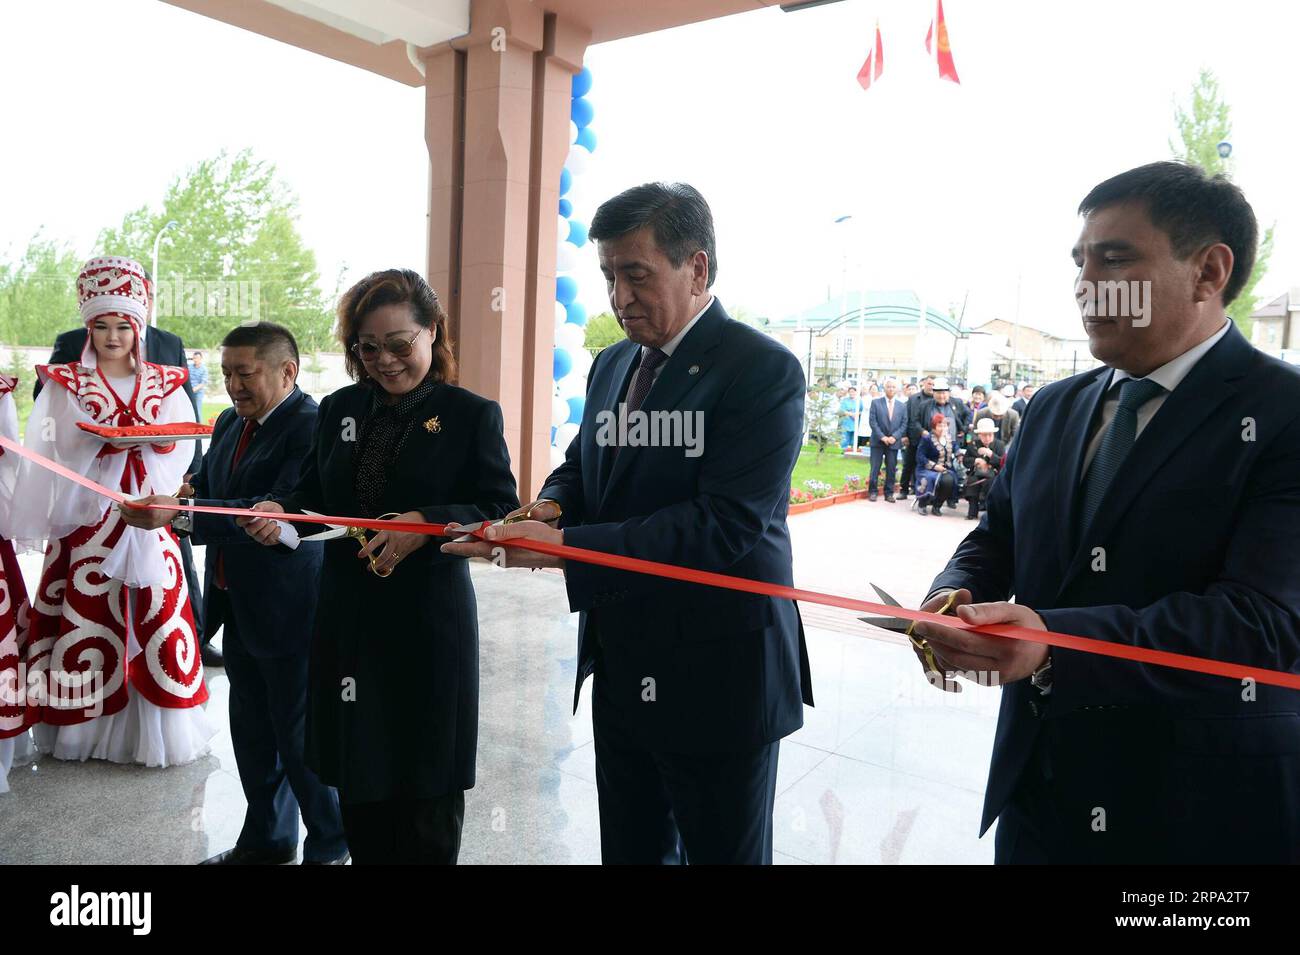 (190423) - OSH, 23 aprile 2019 (Xinhua) - il presidente del Kirghizistan Sooronbai Jeenbekov (2a R) e l'ambasciatore cinese in Kirghizistan Du Dewen (3a R) hanno tagliato il nastro durante la cerimonia di consegna di un ospedale costruito con l'aiuto cinese nella capitale meridionale del Kirghizistan Osh, 22 aprile 2019. Lunedì il presidente del Kirghizistan Sooronbai Jeenbekov ha affermato che la Cina è un vicino stretto, un amico affidabile e un partner strategico del suo paese. Il presidente ha fatto le osservazioni in occasione della cerimonia di consegna di un ospedale costruito con l'aiuto cinese nella capitale meridionale del Kirghizistan Osh. Alla cerimonia ha partecipato anche Chine Foto Stock